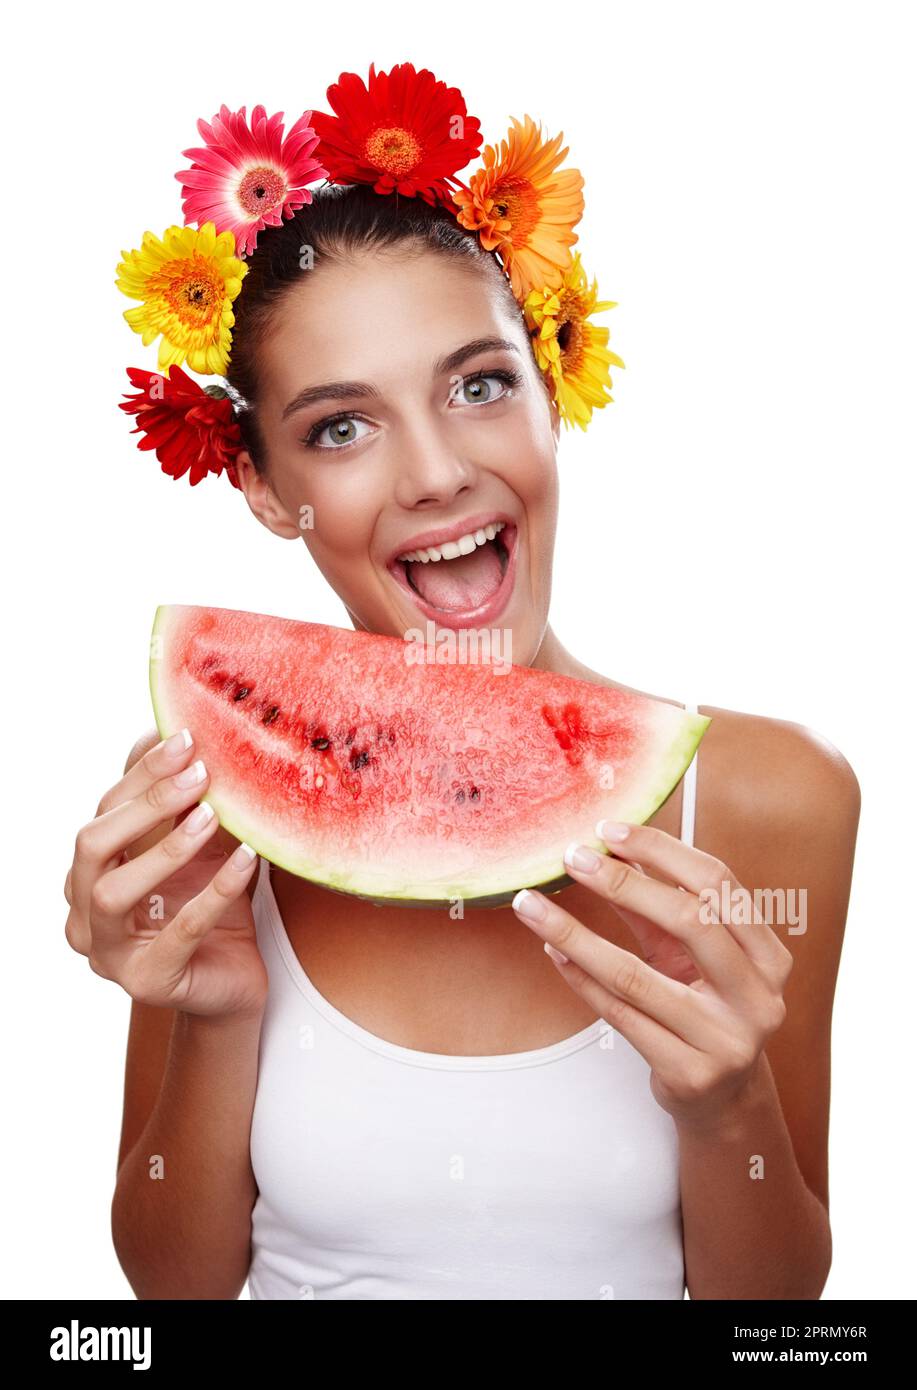 Feliz de comer de forma saludable. Retrato recortado de una hermosa joven que llevaba una corona de flores y comiendo una sandía. Foto de stock